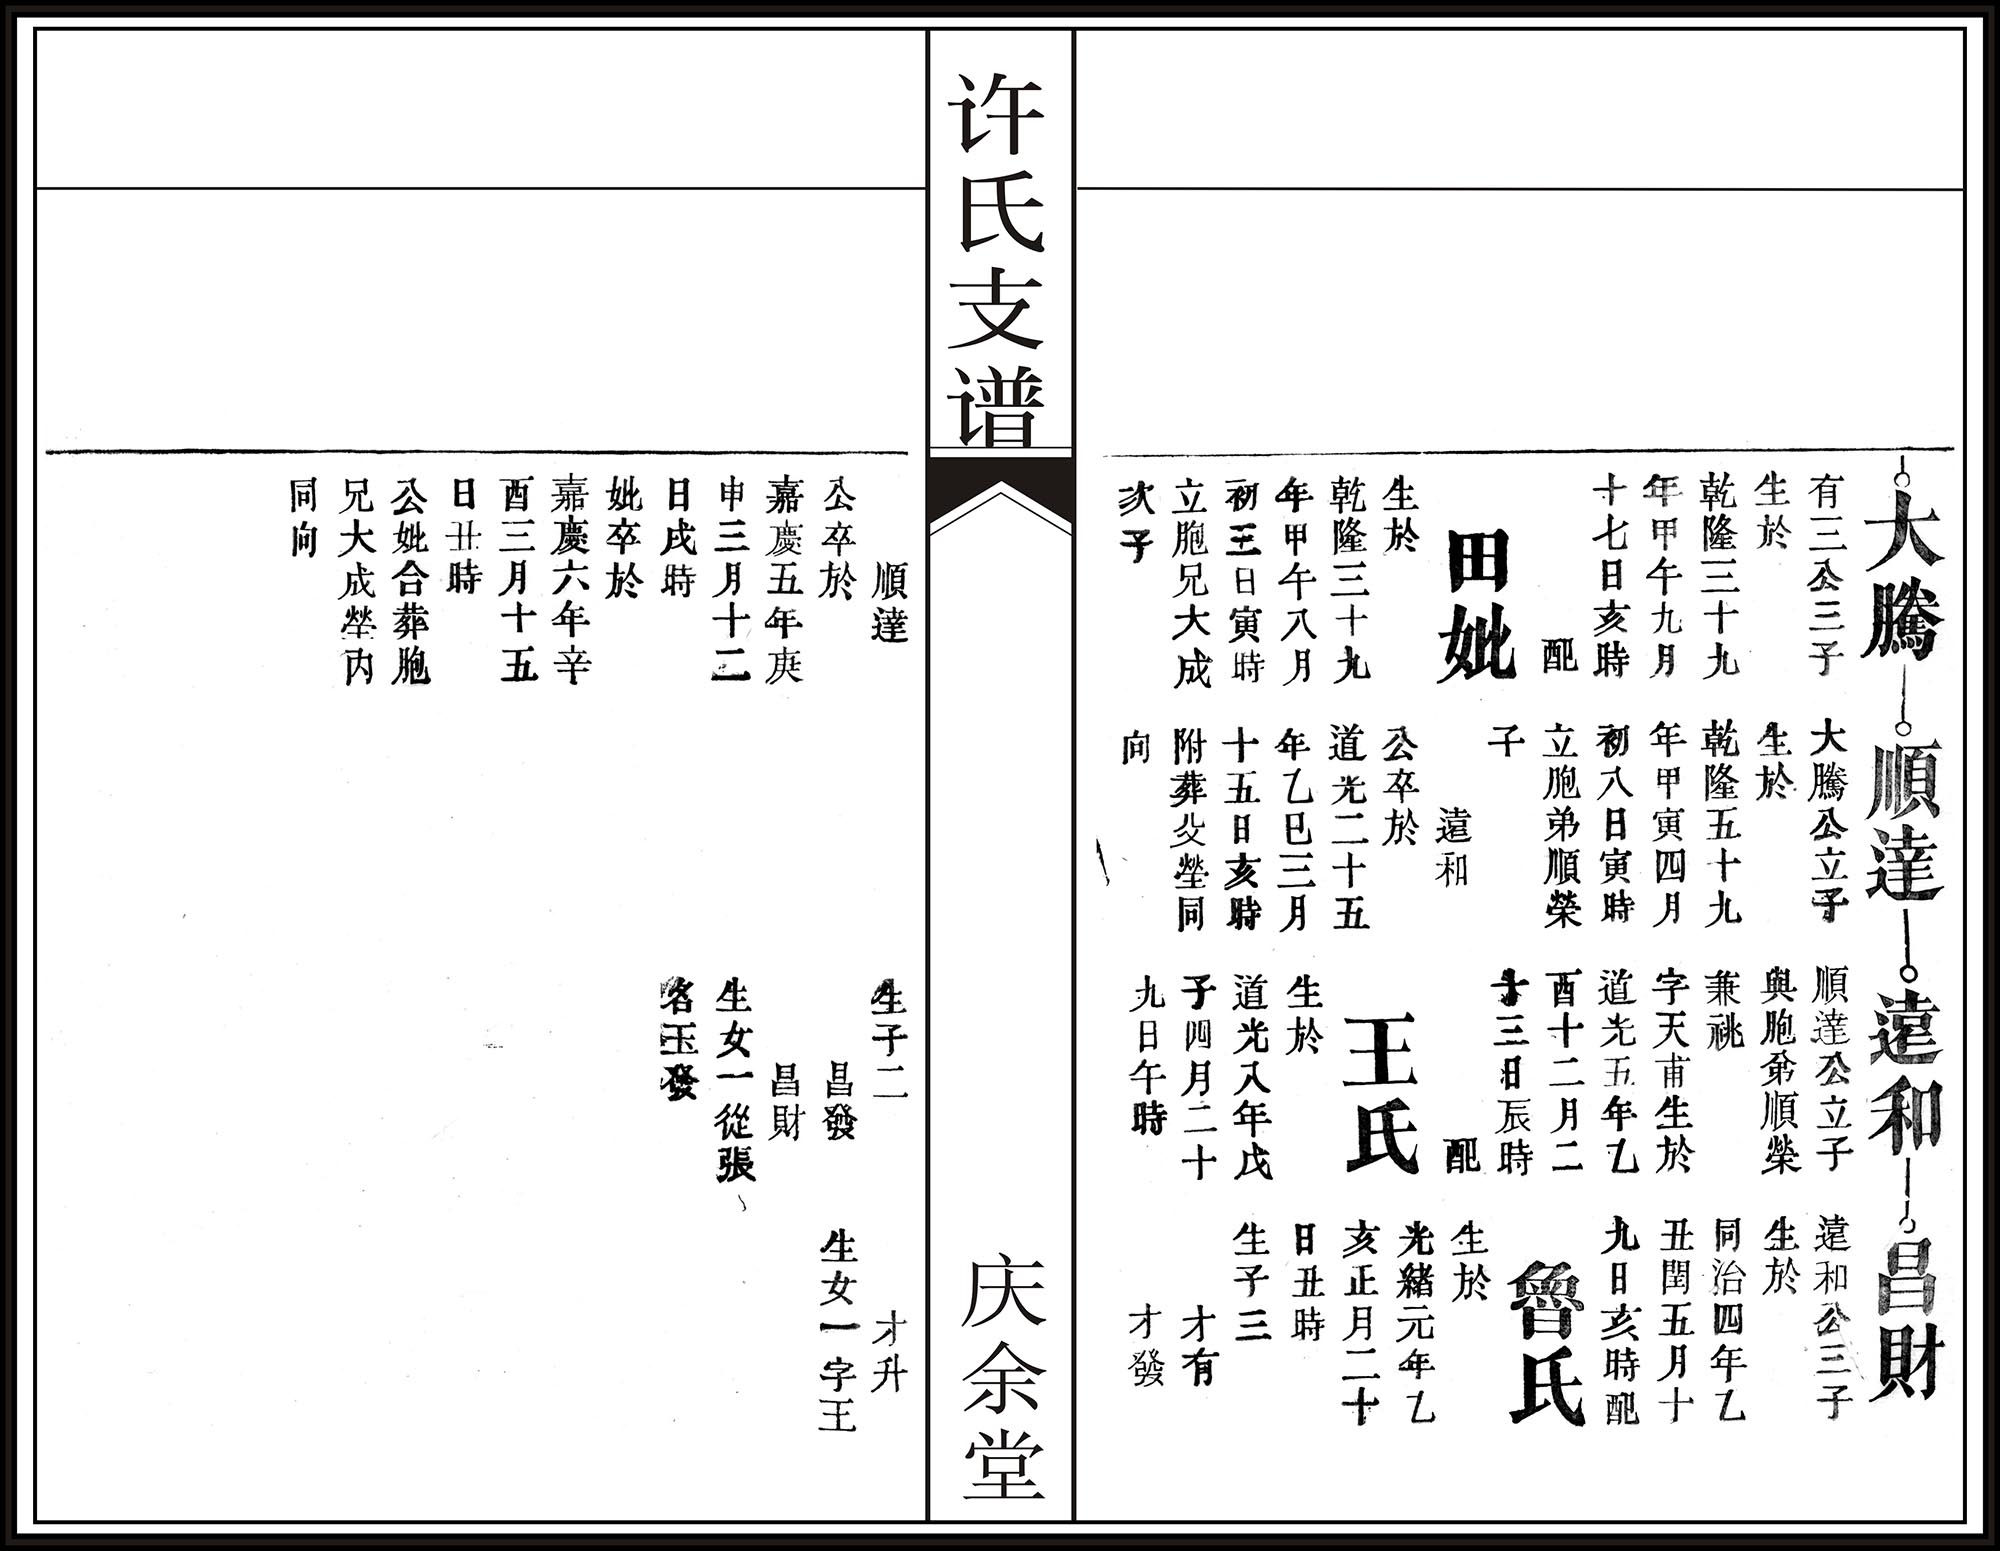 许氏家谱(明国时期)-卷10-合肥许氏|高阳许氏|许氏